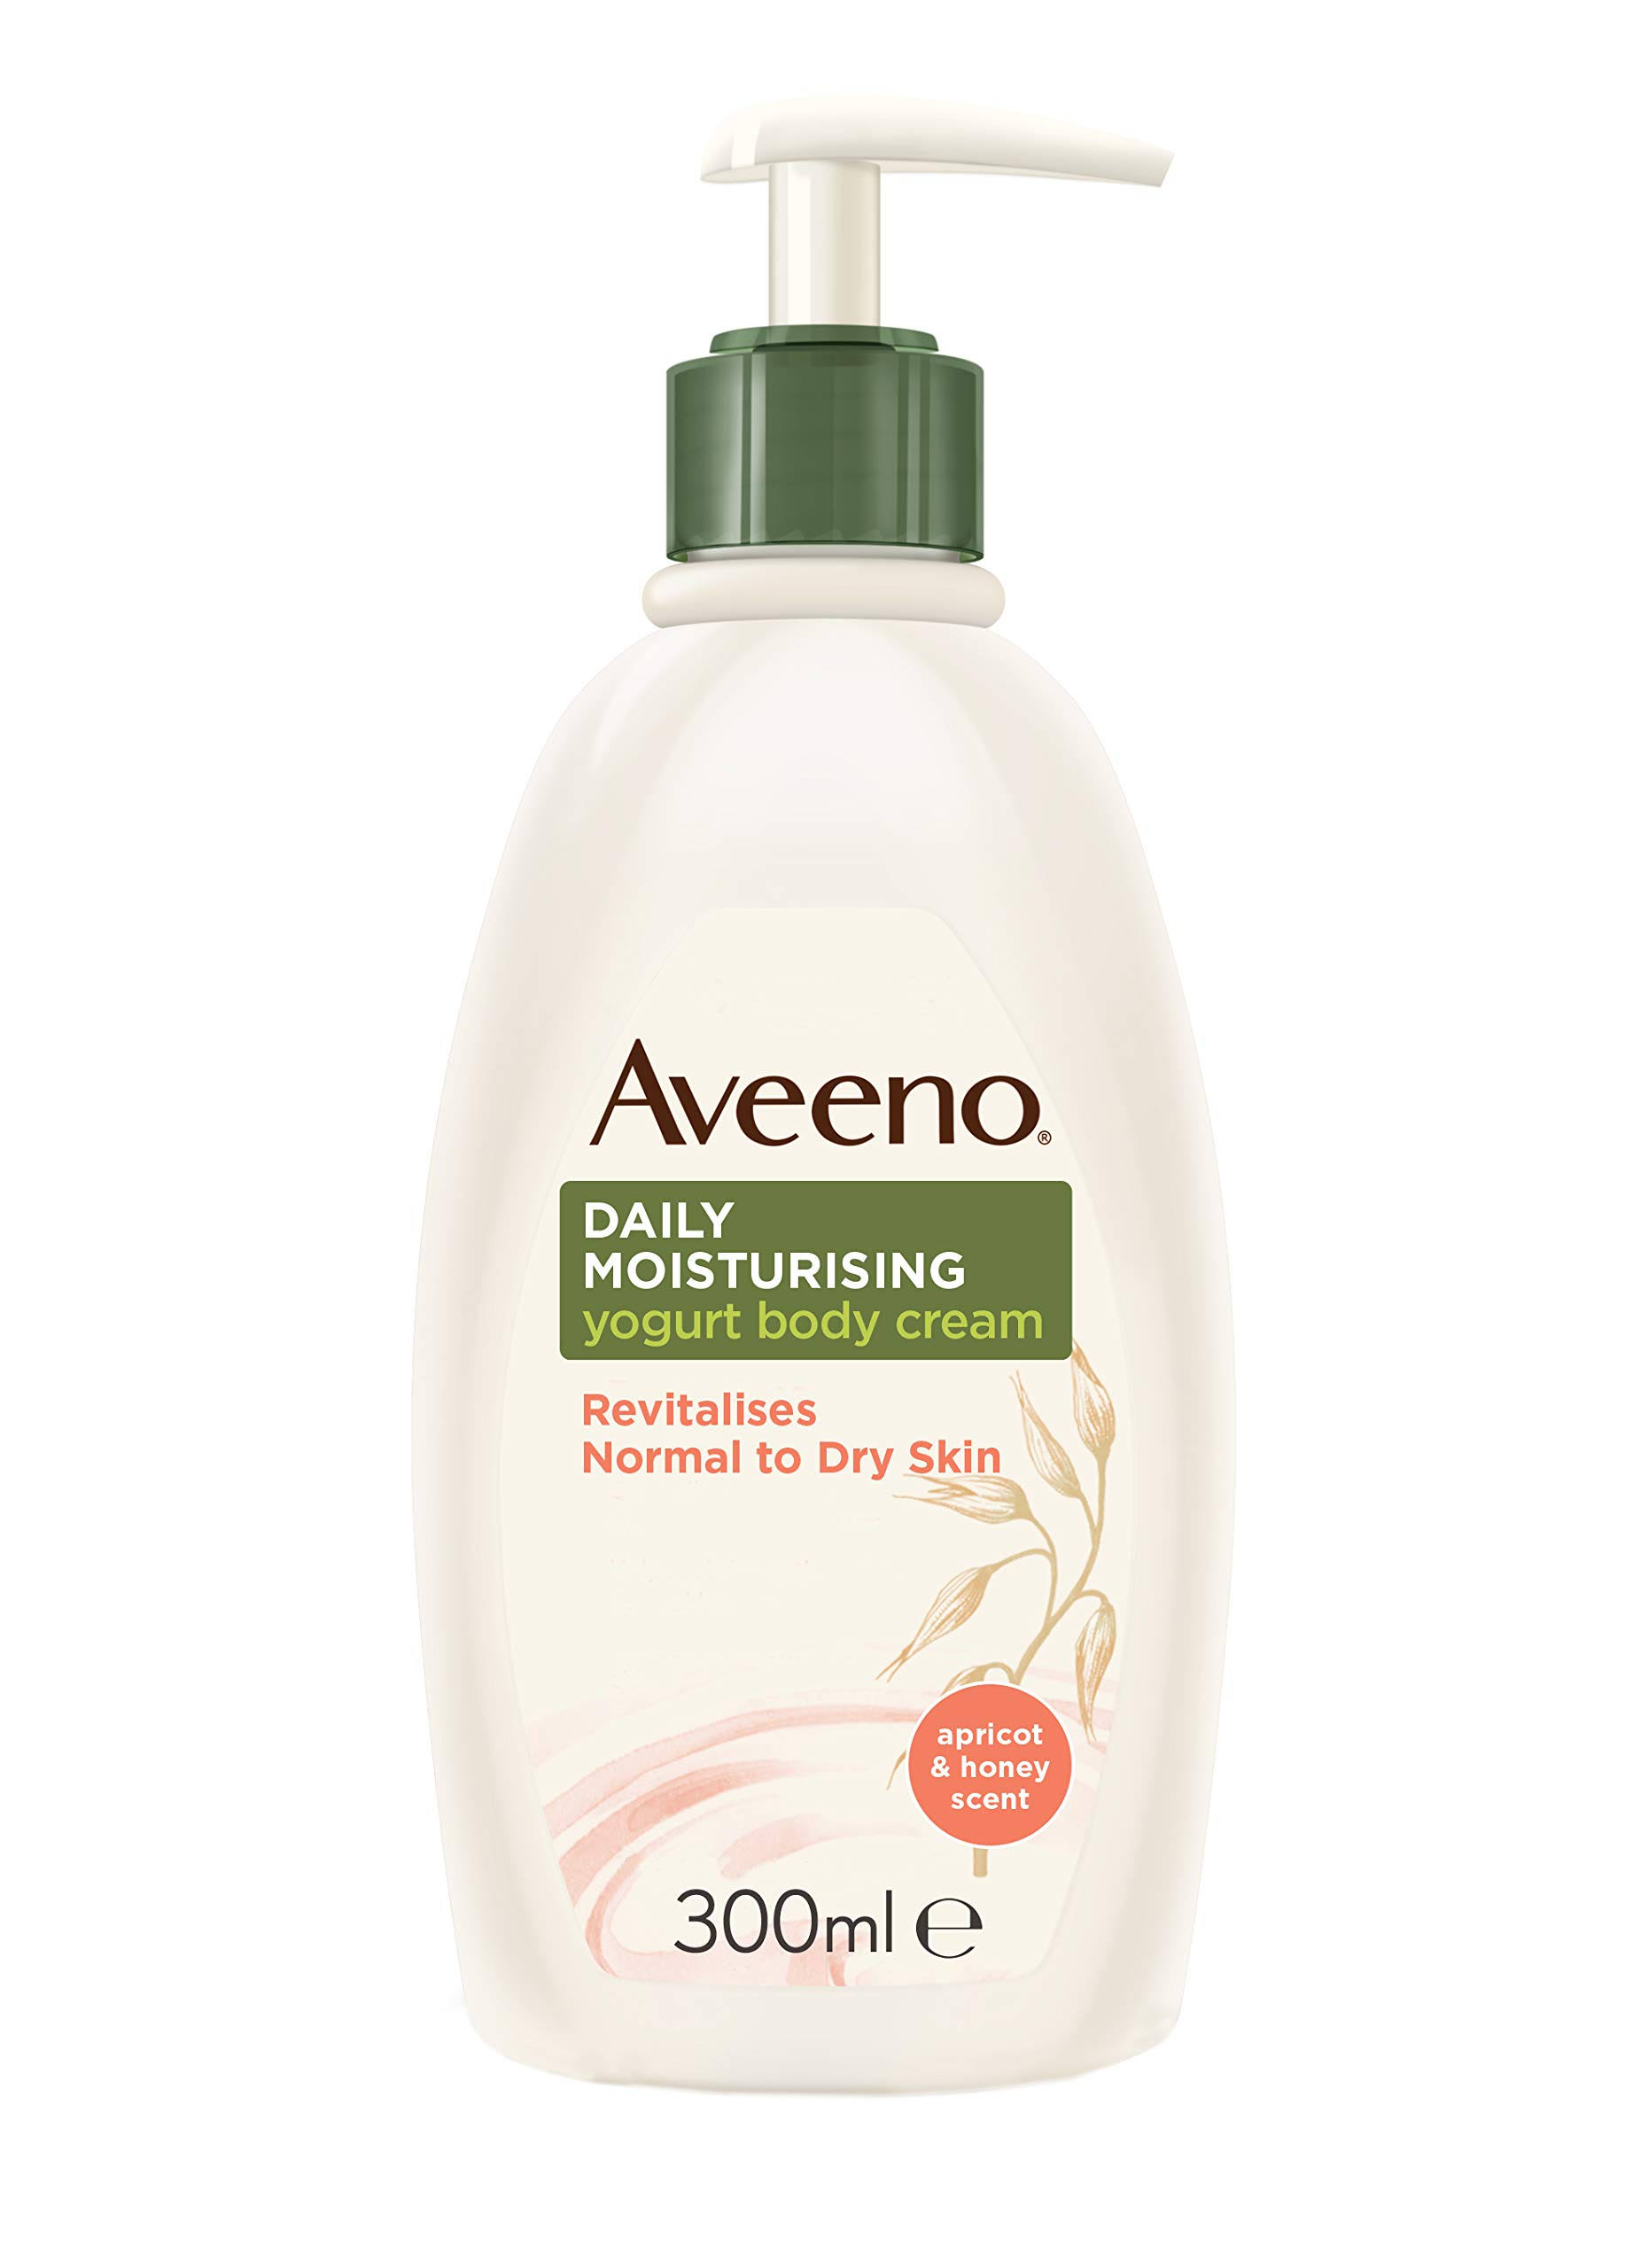 Aveeno Daily Moisturising Yogurt Body Cream - Apricot and Honey - 300ml